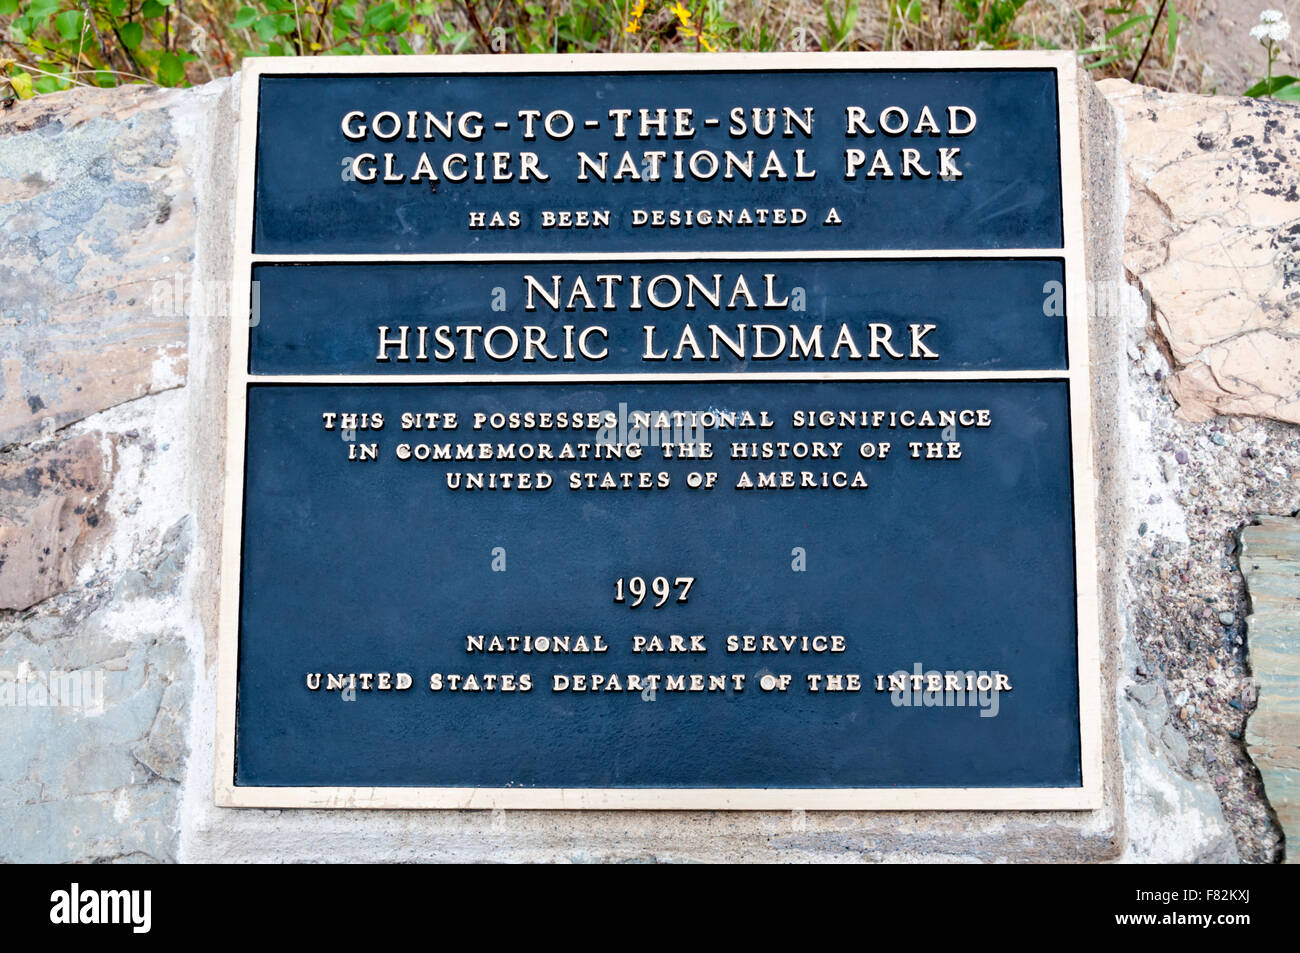 Una placa grabando la designación del Going-To-The-Sun Road en el Parque Nacional de Los Glaciares como un Hito Histórico Nacional. Foto de stock